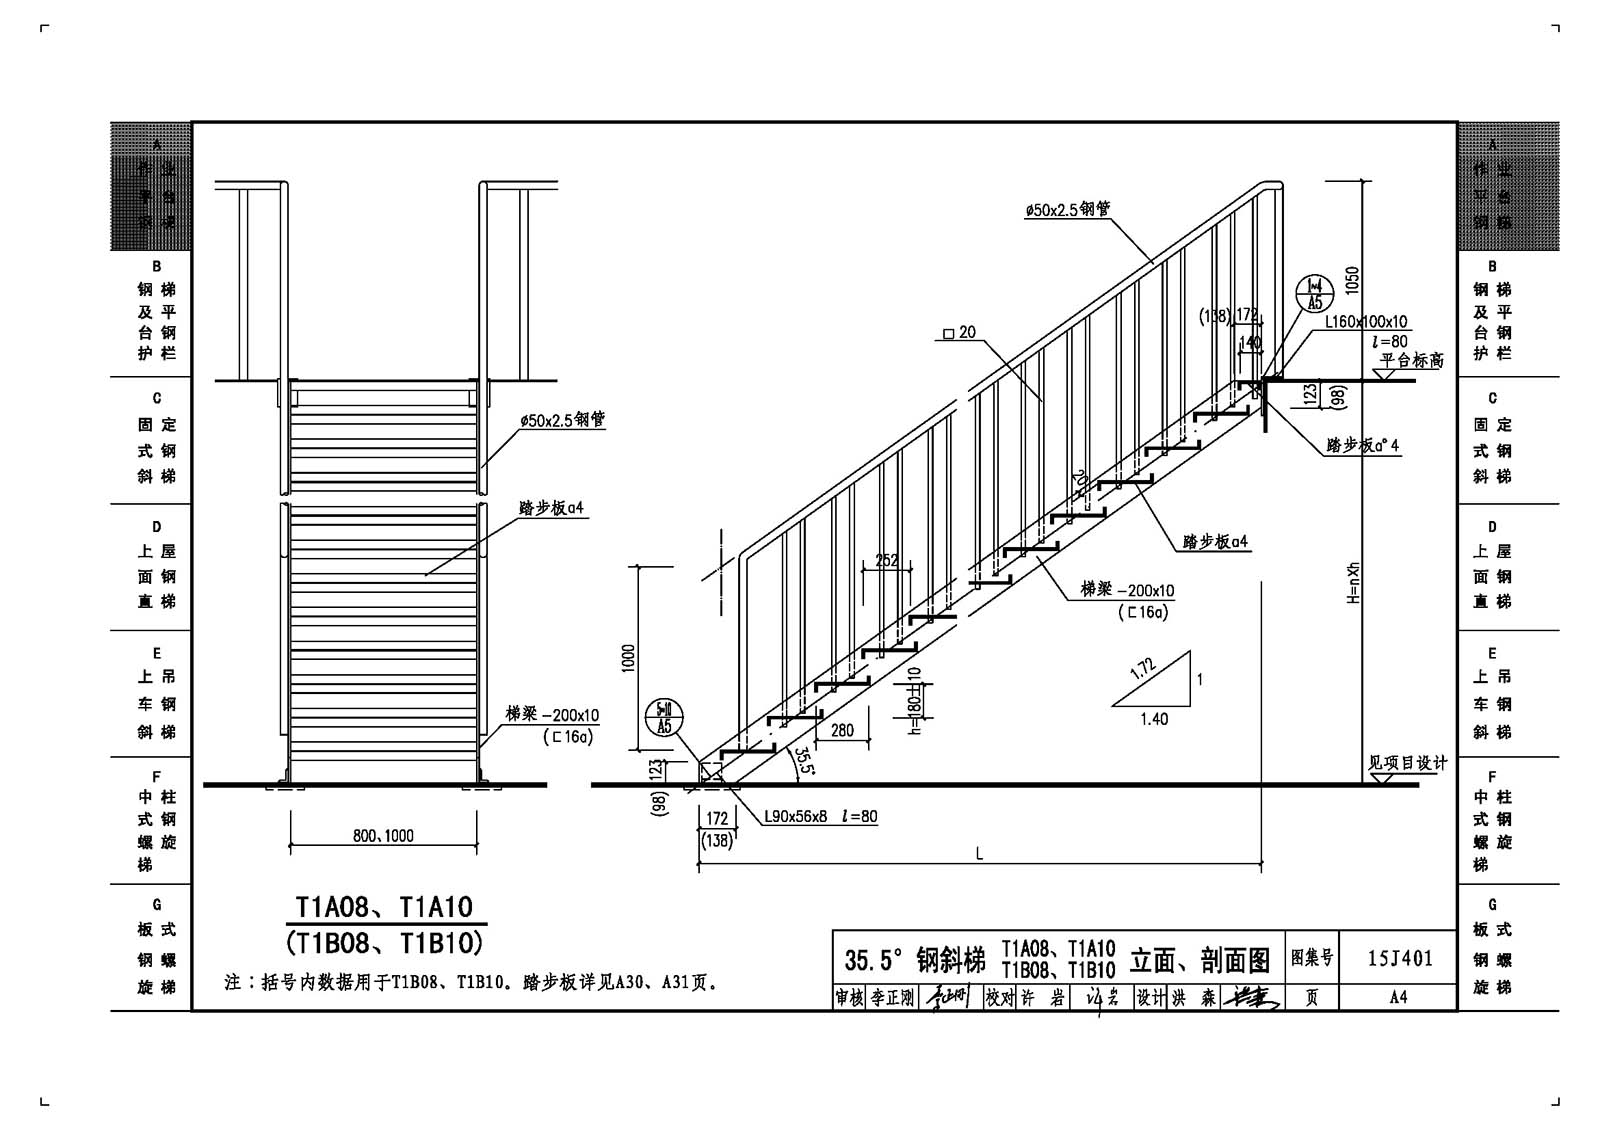 15J401:钢梯 - 国家建筑标准设计网